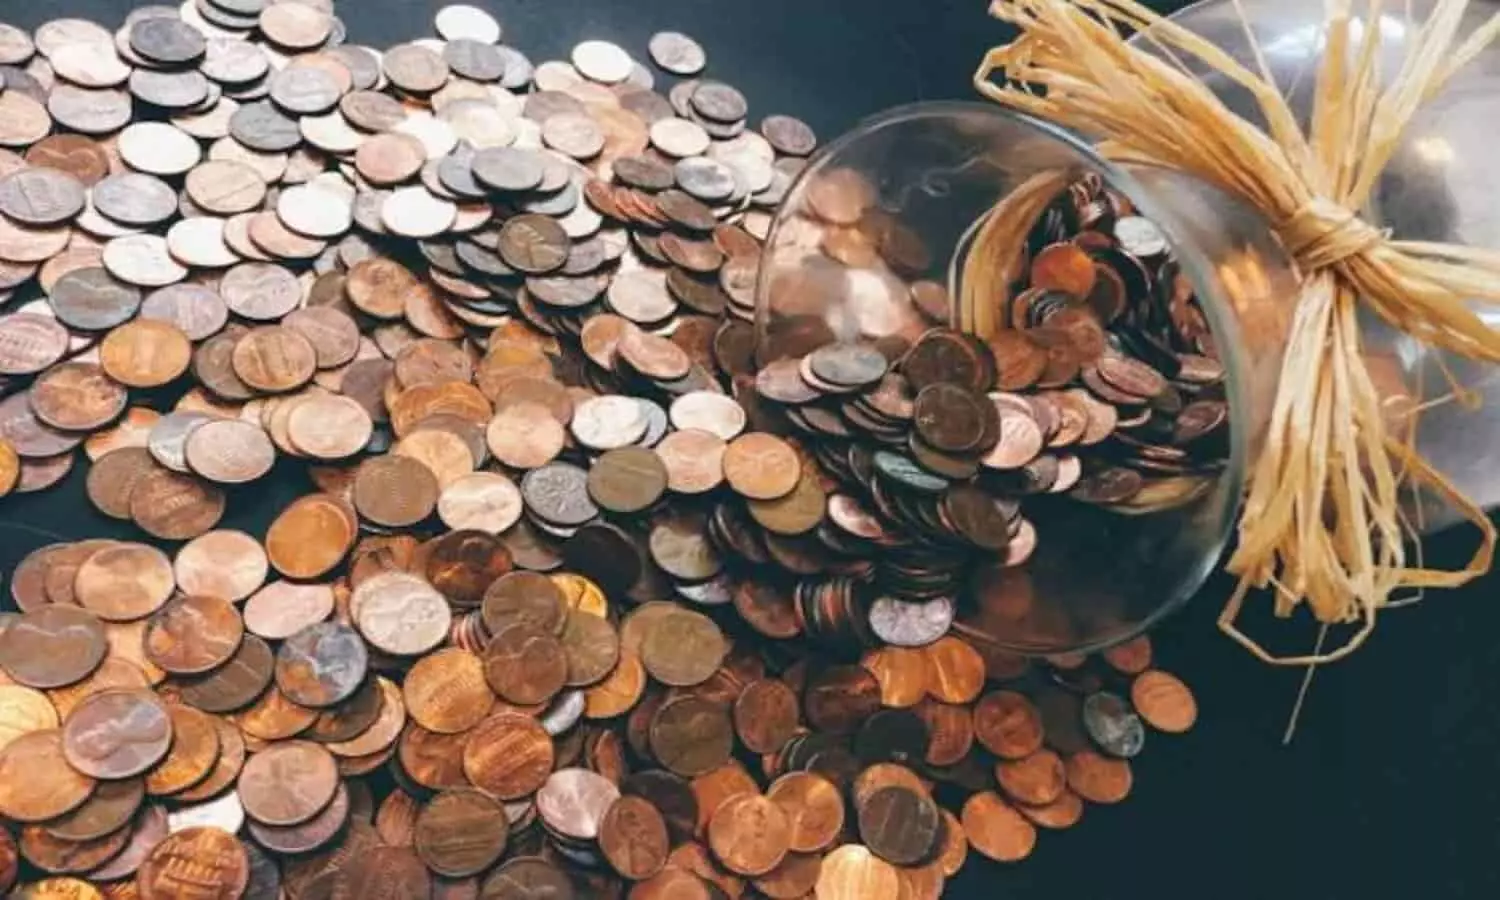 Old Coin and Note Sell: पुराने नोट एवं सिक्कों से कमाएं लाखों! जानें कैसे